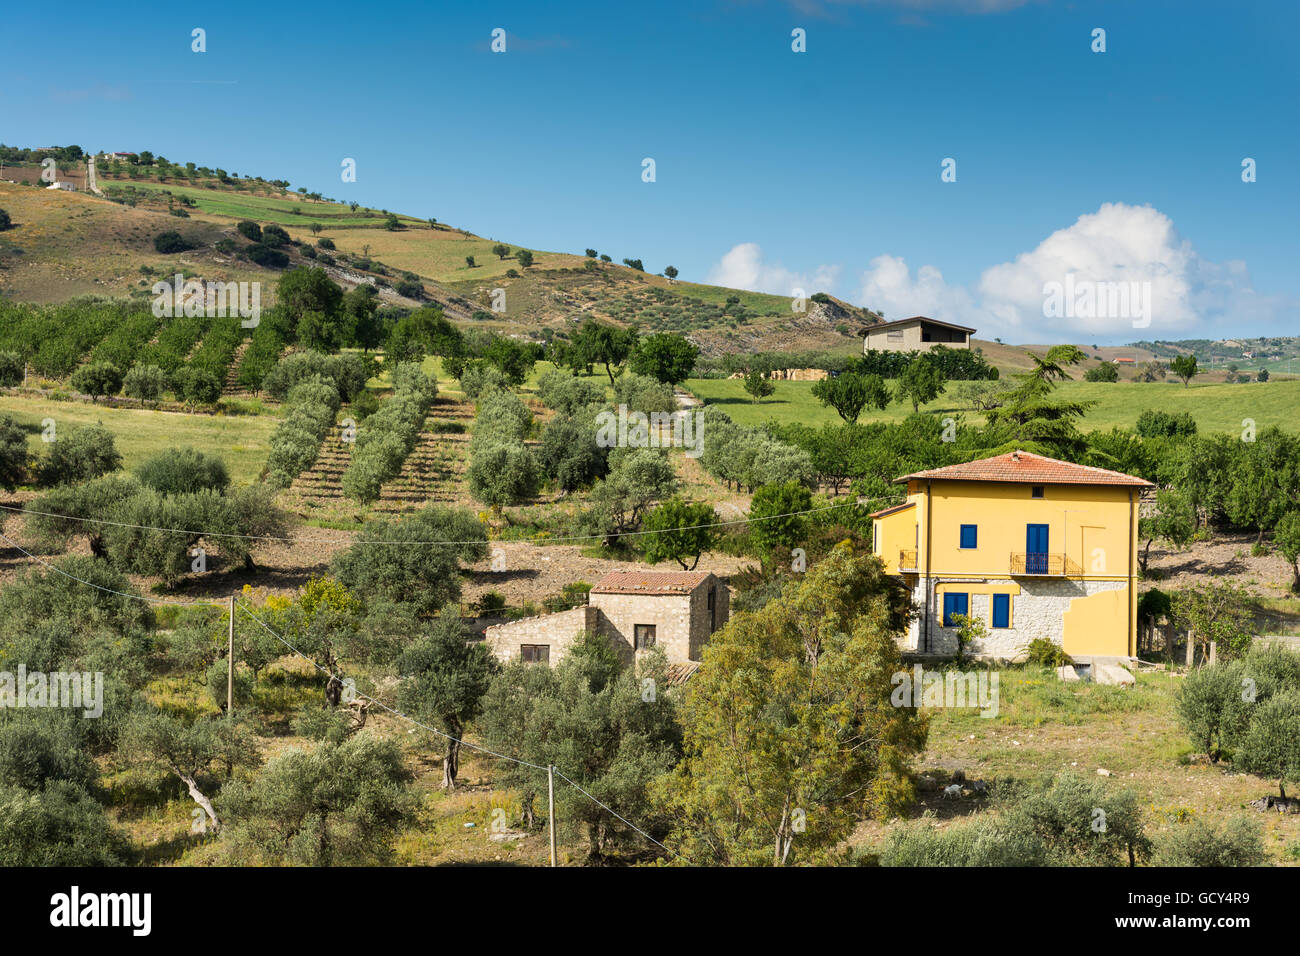 Sizilianische Landschaft mit antiken und modernen Haus mit Oliven- und Mandelbäumen in voller Blüte. Stockfoto